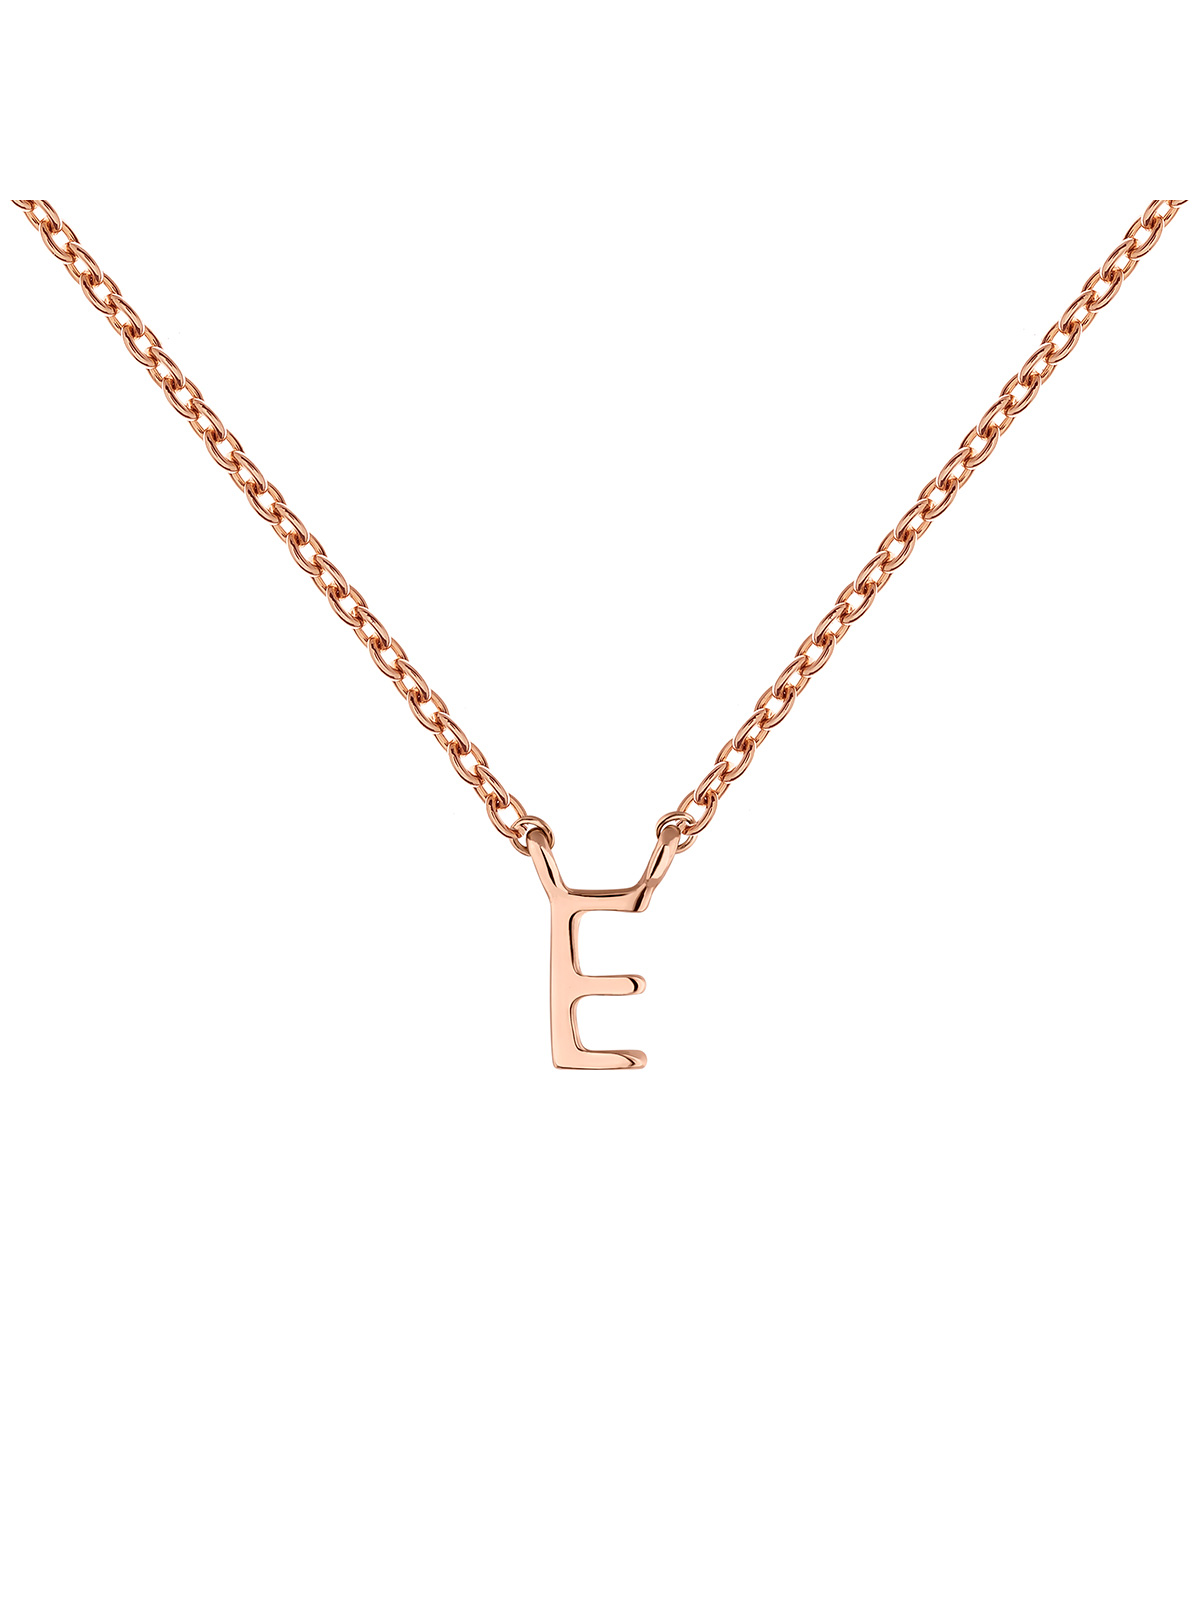 Collier initiale E or rose , J04382-03-E, mainproduct